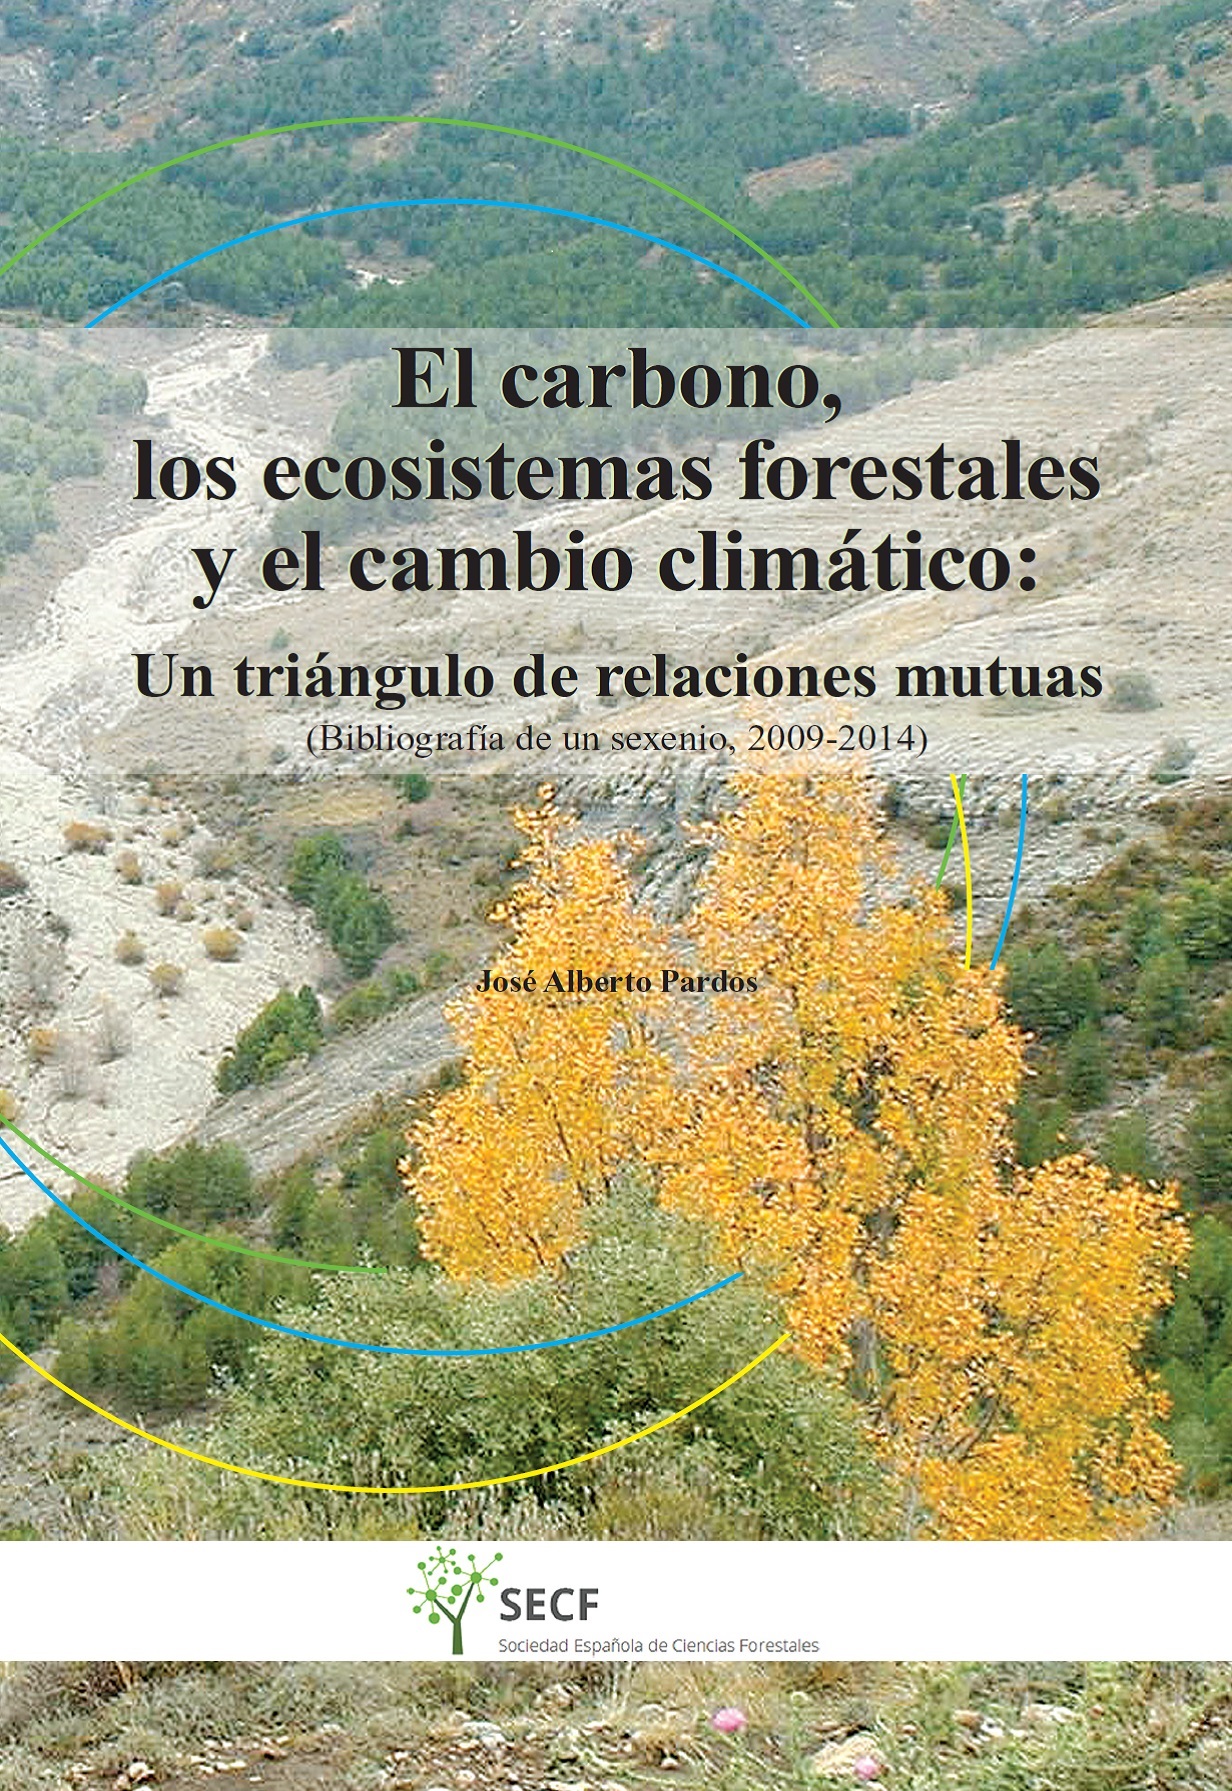 el carbono y ecosistemas forestales